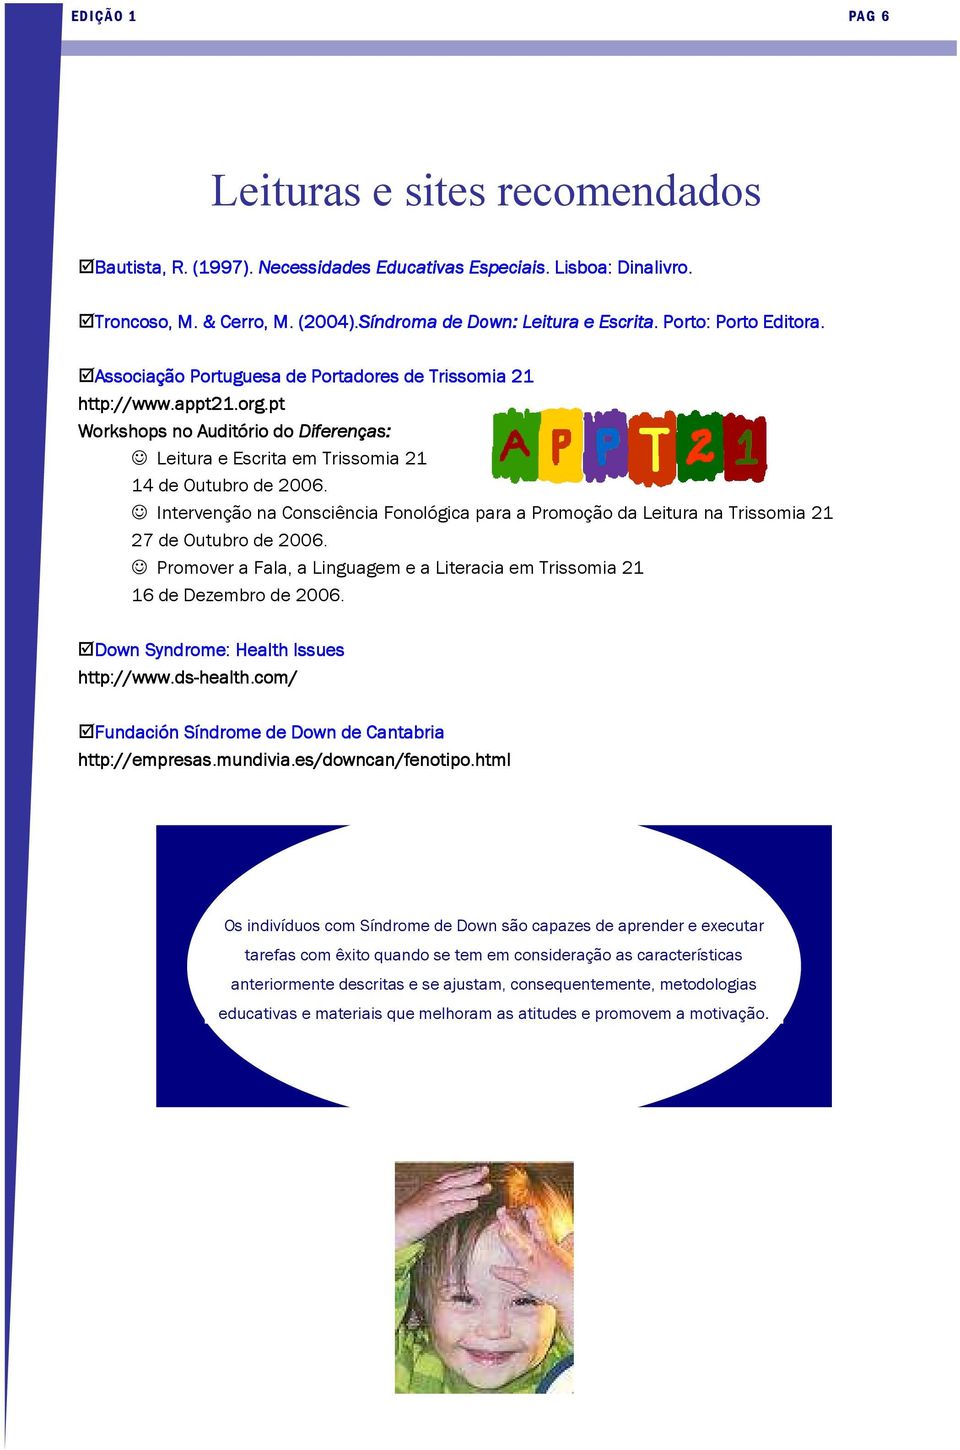 Intervenção na Consciência Fonológica para a Promoção da Leitura na Trissomia 21 27 de Outubro de 2006. Promover a Fala, a Linguagem e a Literacia em Trissomia 21 16 de Dezembro de 2006.